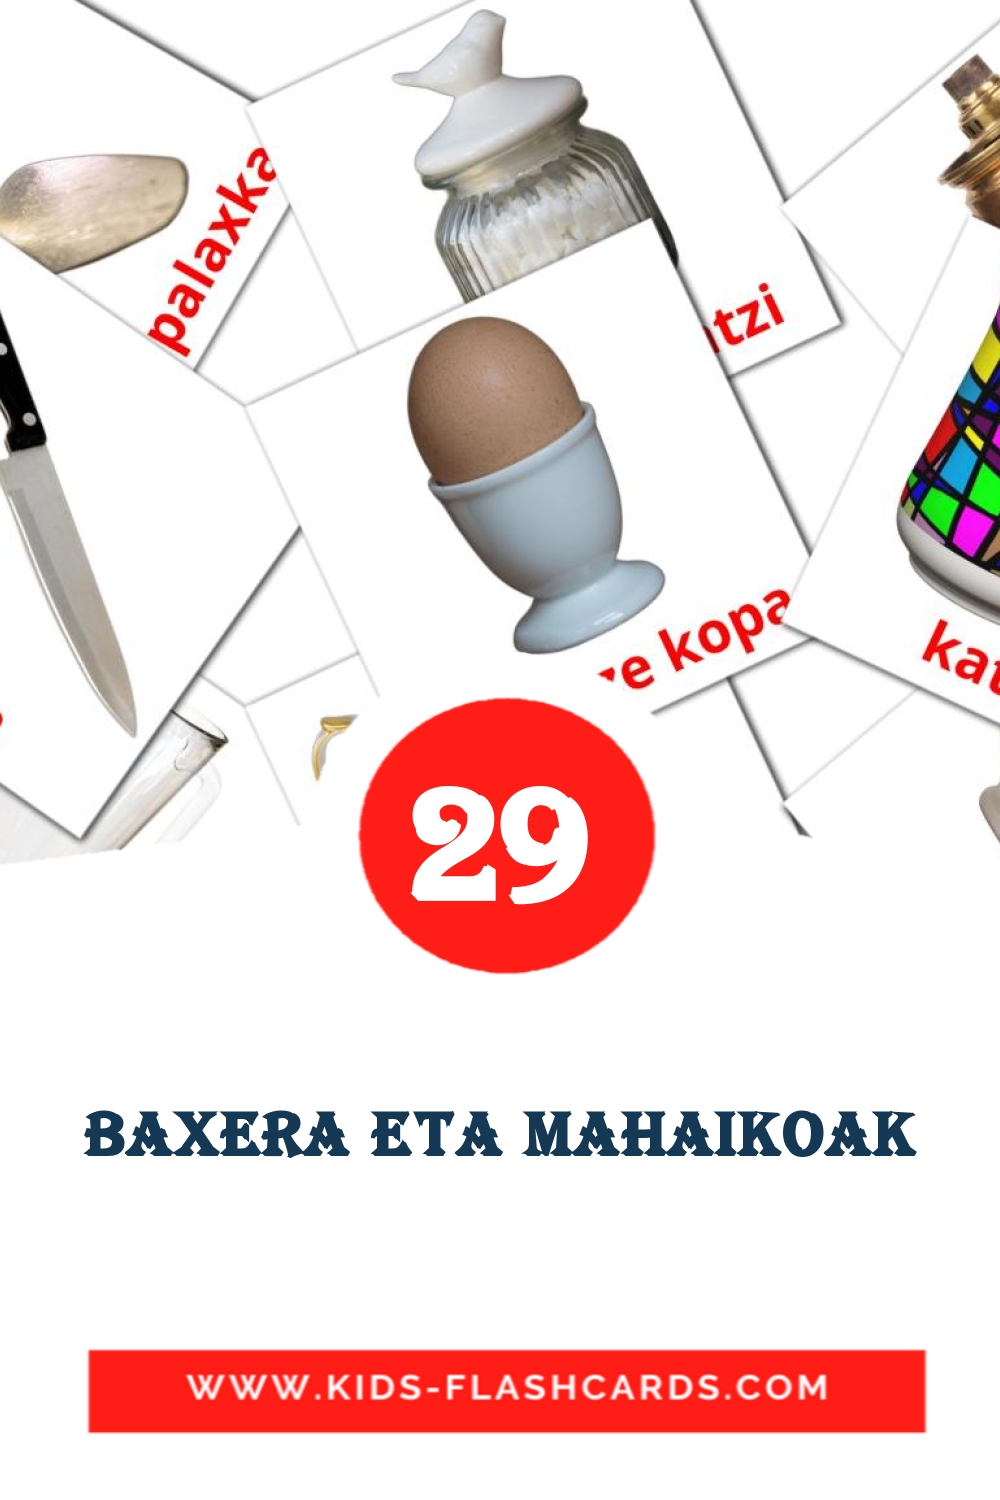 29 Baxera eta mahaikoak fotokaarten voor kleuters in het baskisch